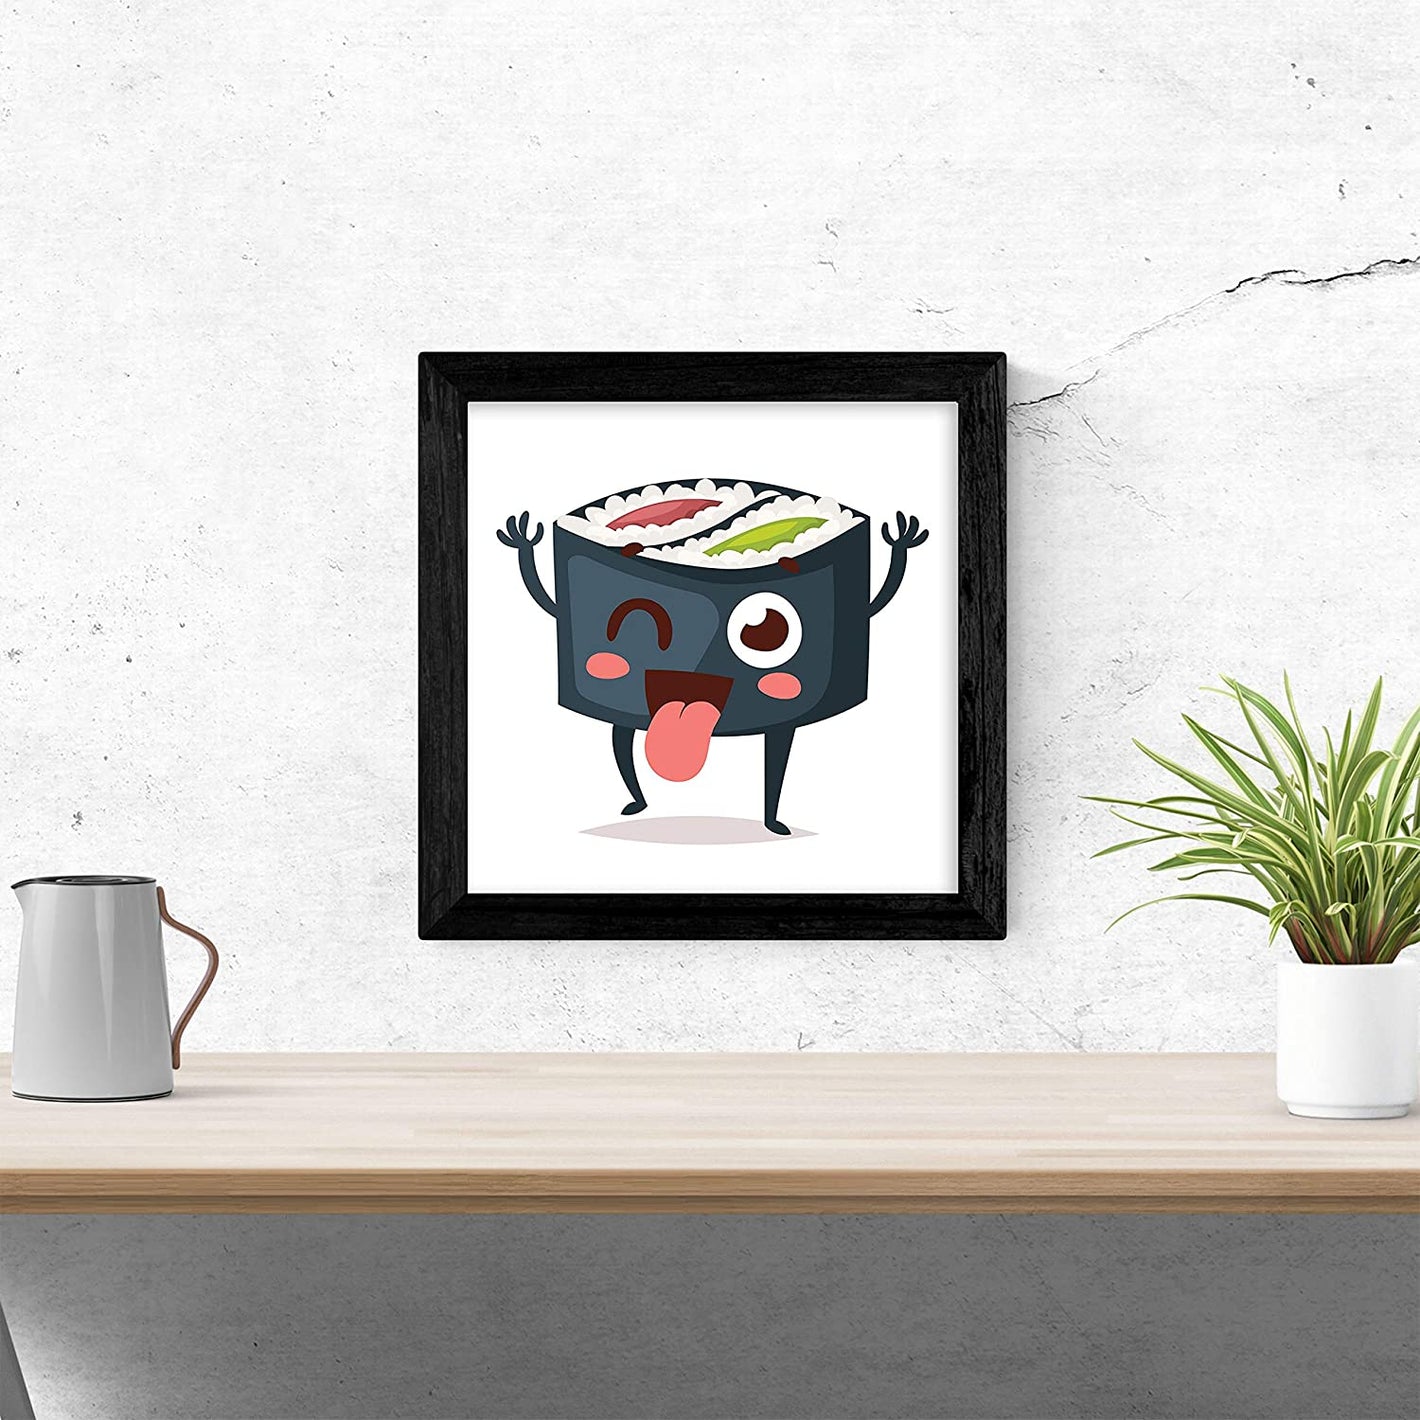 Imagen principal de la colección de Láminas Sushi: Una ilustración detallada de un plato de sushi con diferentes tipos de rollos y nigiri, acompañados de wasabi y jengibre. Los colores vibrantes y la textura realista hacen que la imagen parezca casi real